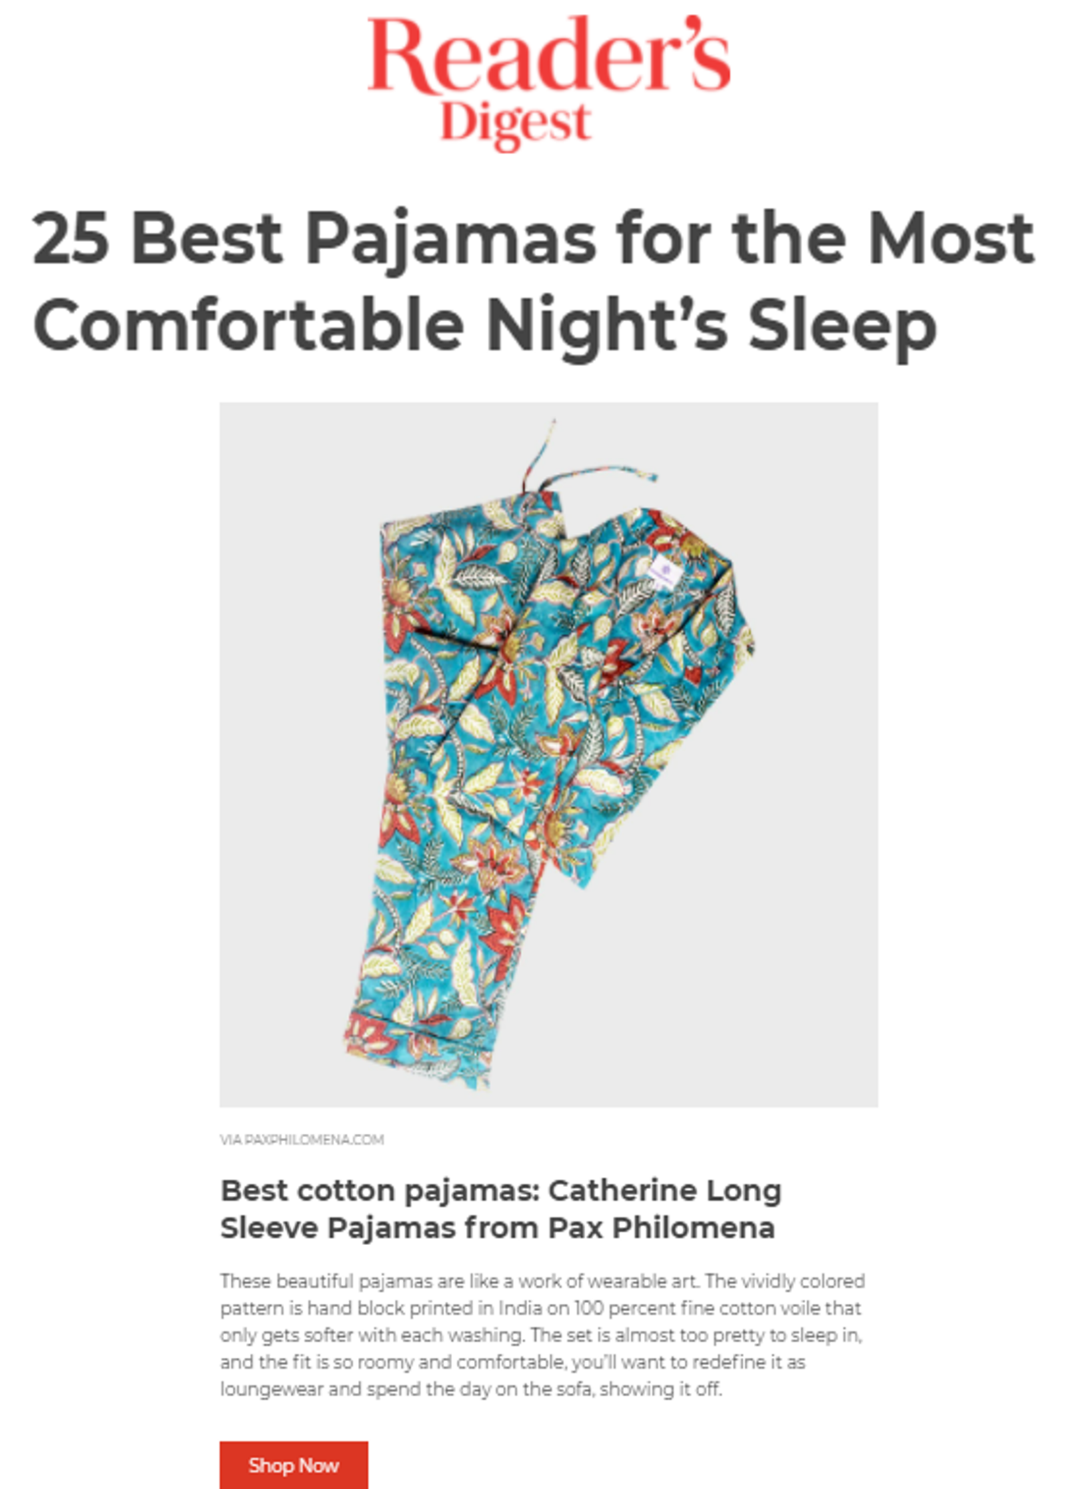 Catherine Long Sleeve Cotton Pajamas